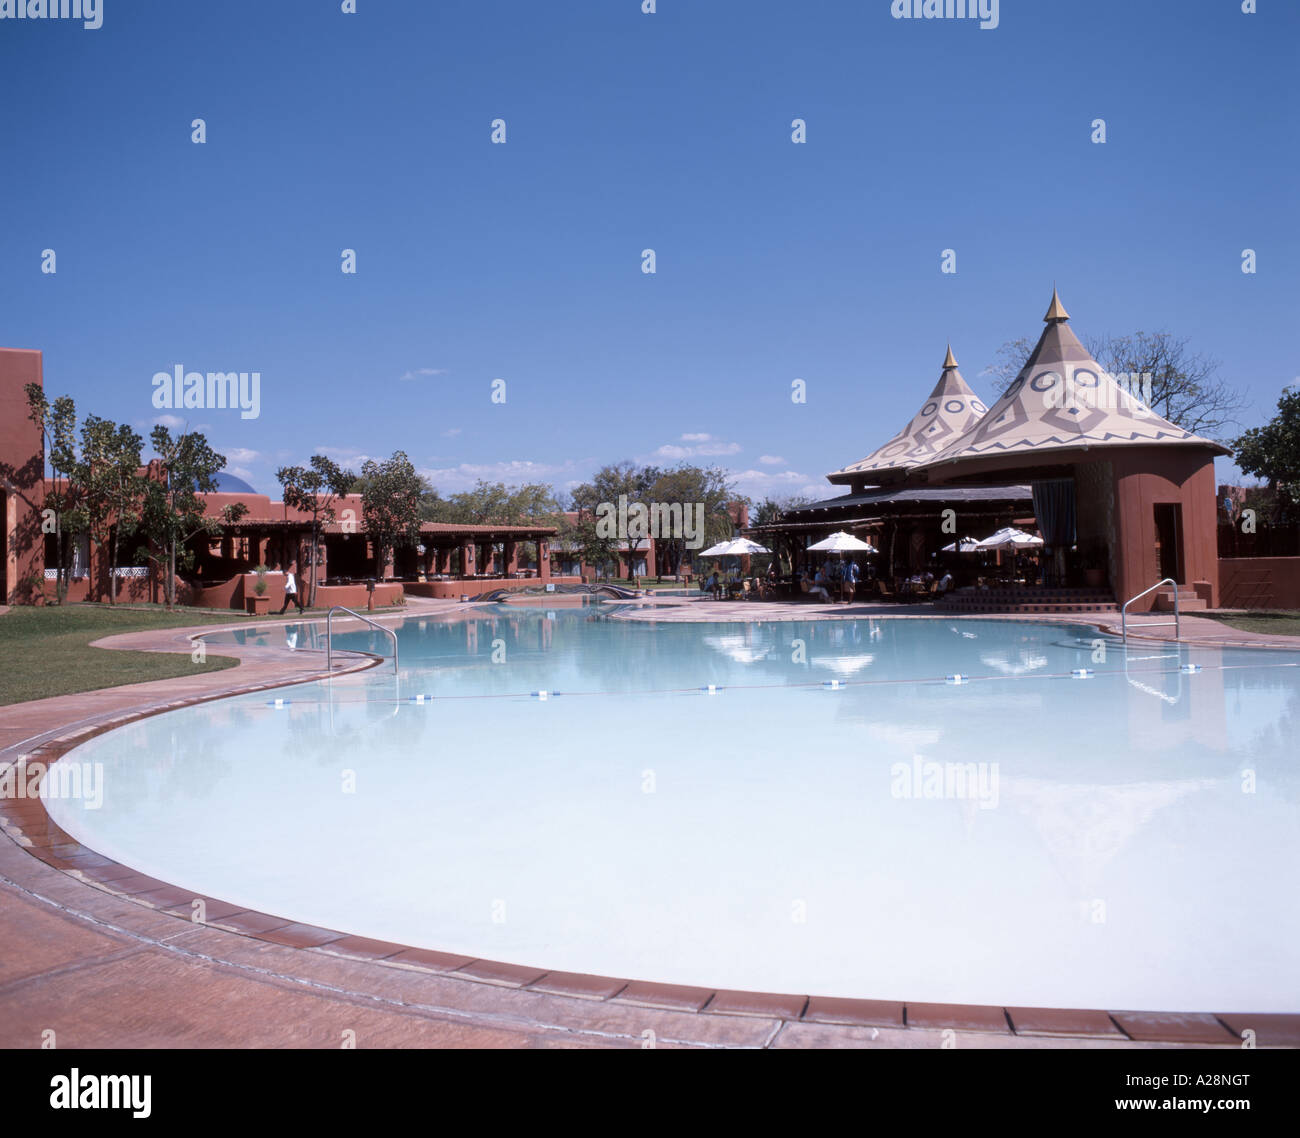 Zambesi Sun Hotel swimming pool, Victoria Falls (Mosi-oa-Tunya), Livingstone, Southern Province, Zambia Stock Photo